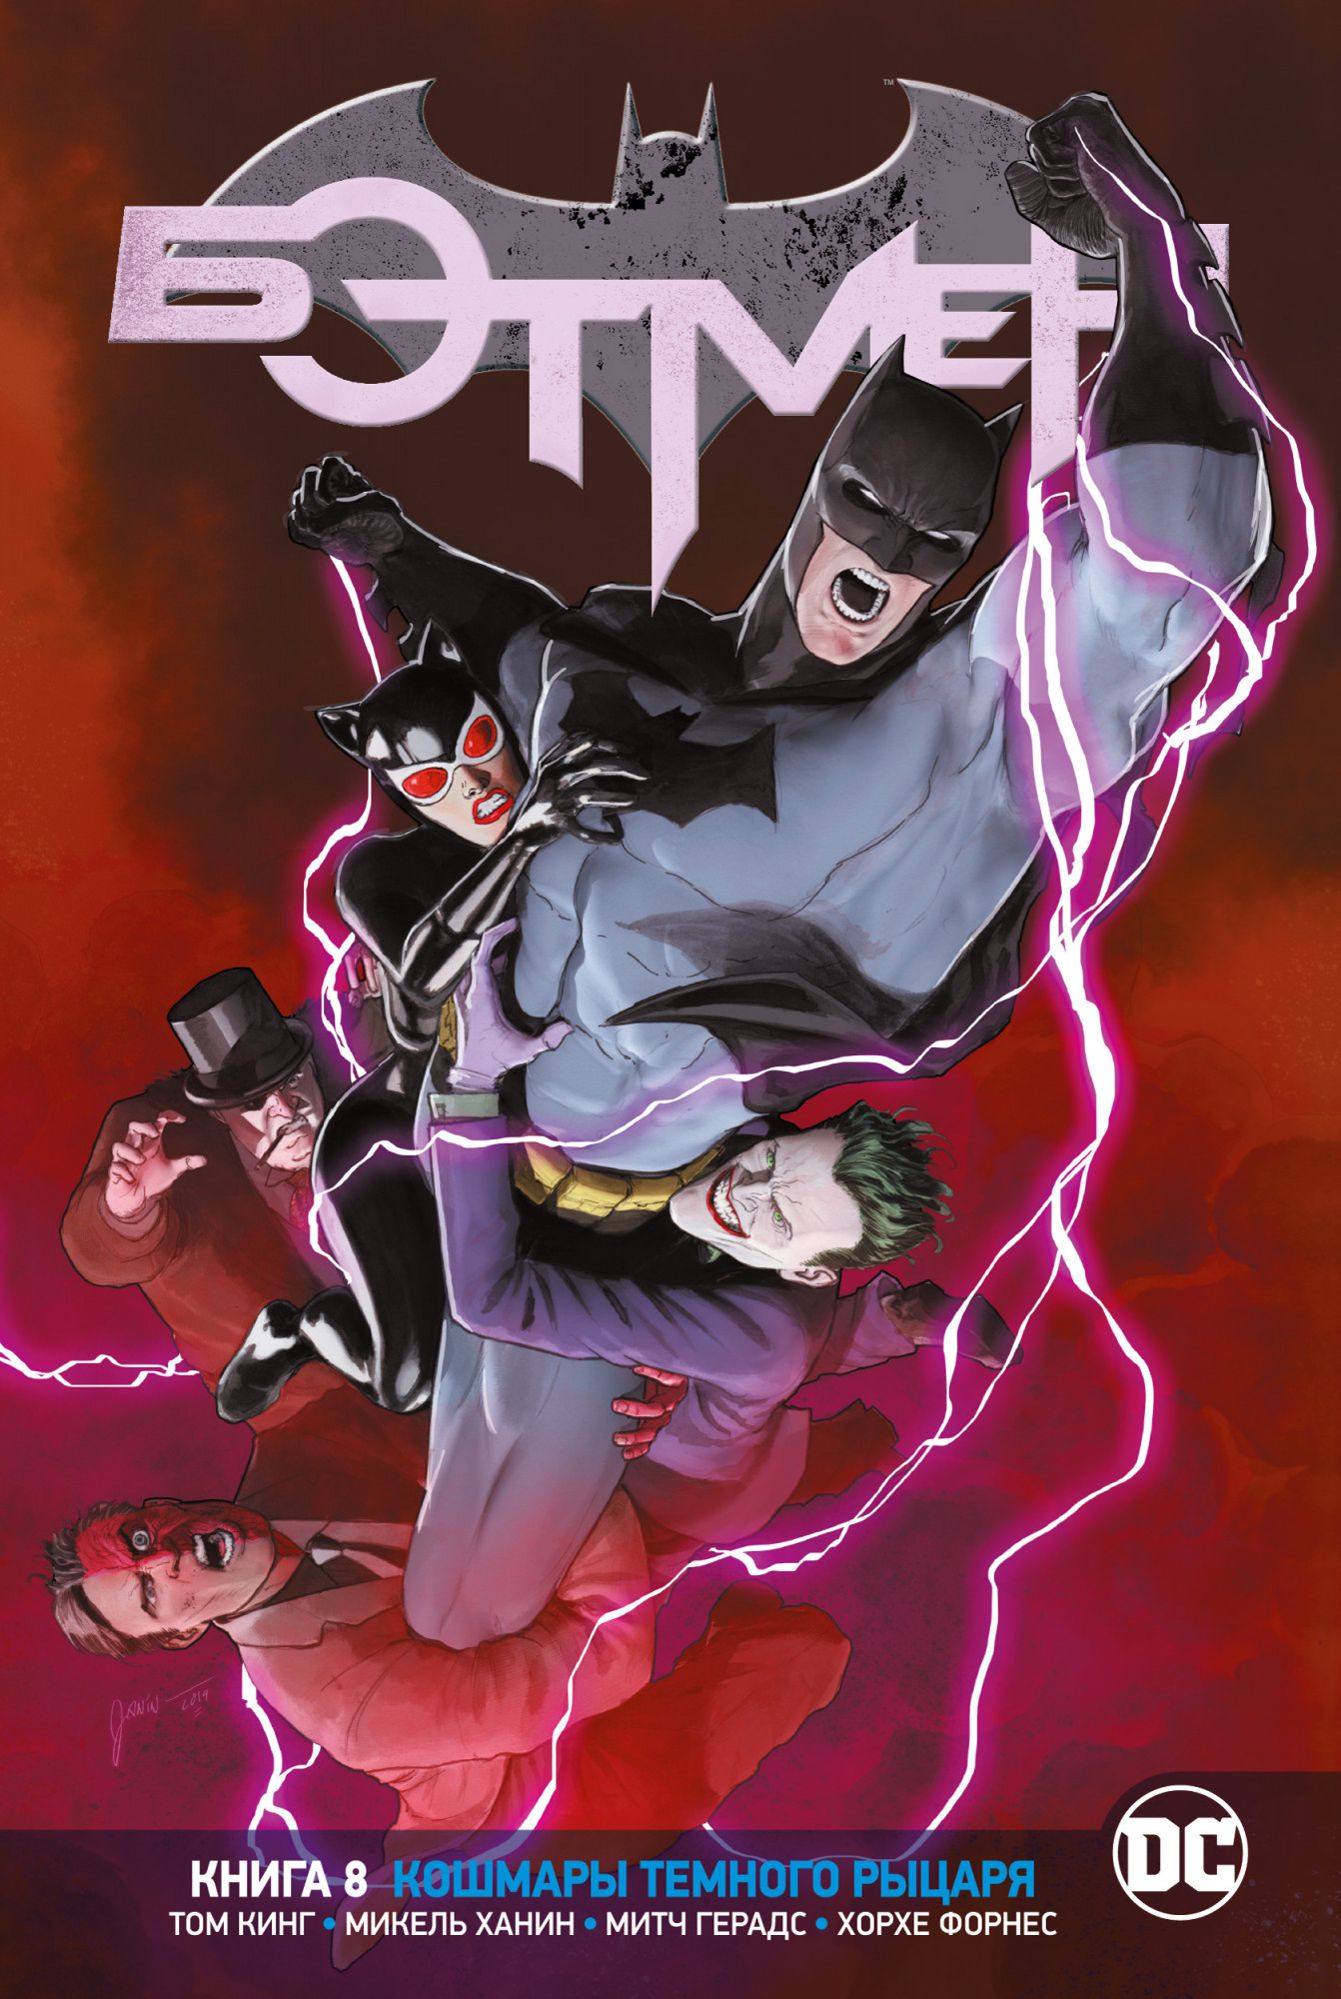 Комикс Вселенная DC Rebirth: Бэтмен – Кошмары Темного Рыцаря. Книга 8 от 1С Интерес